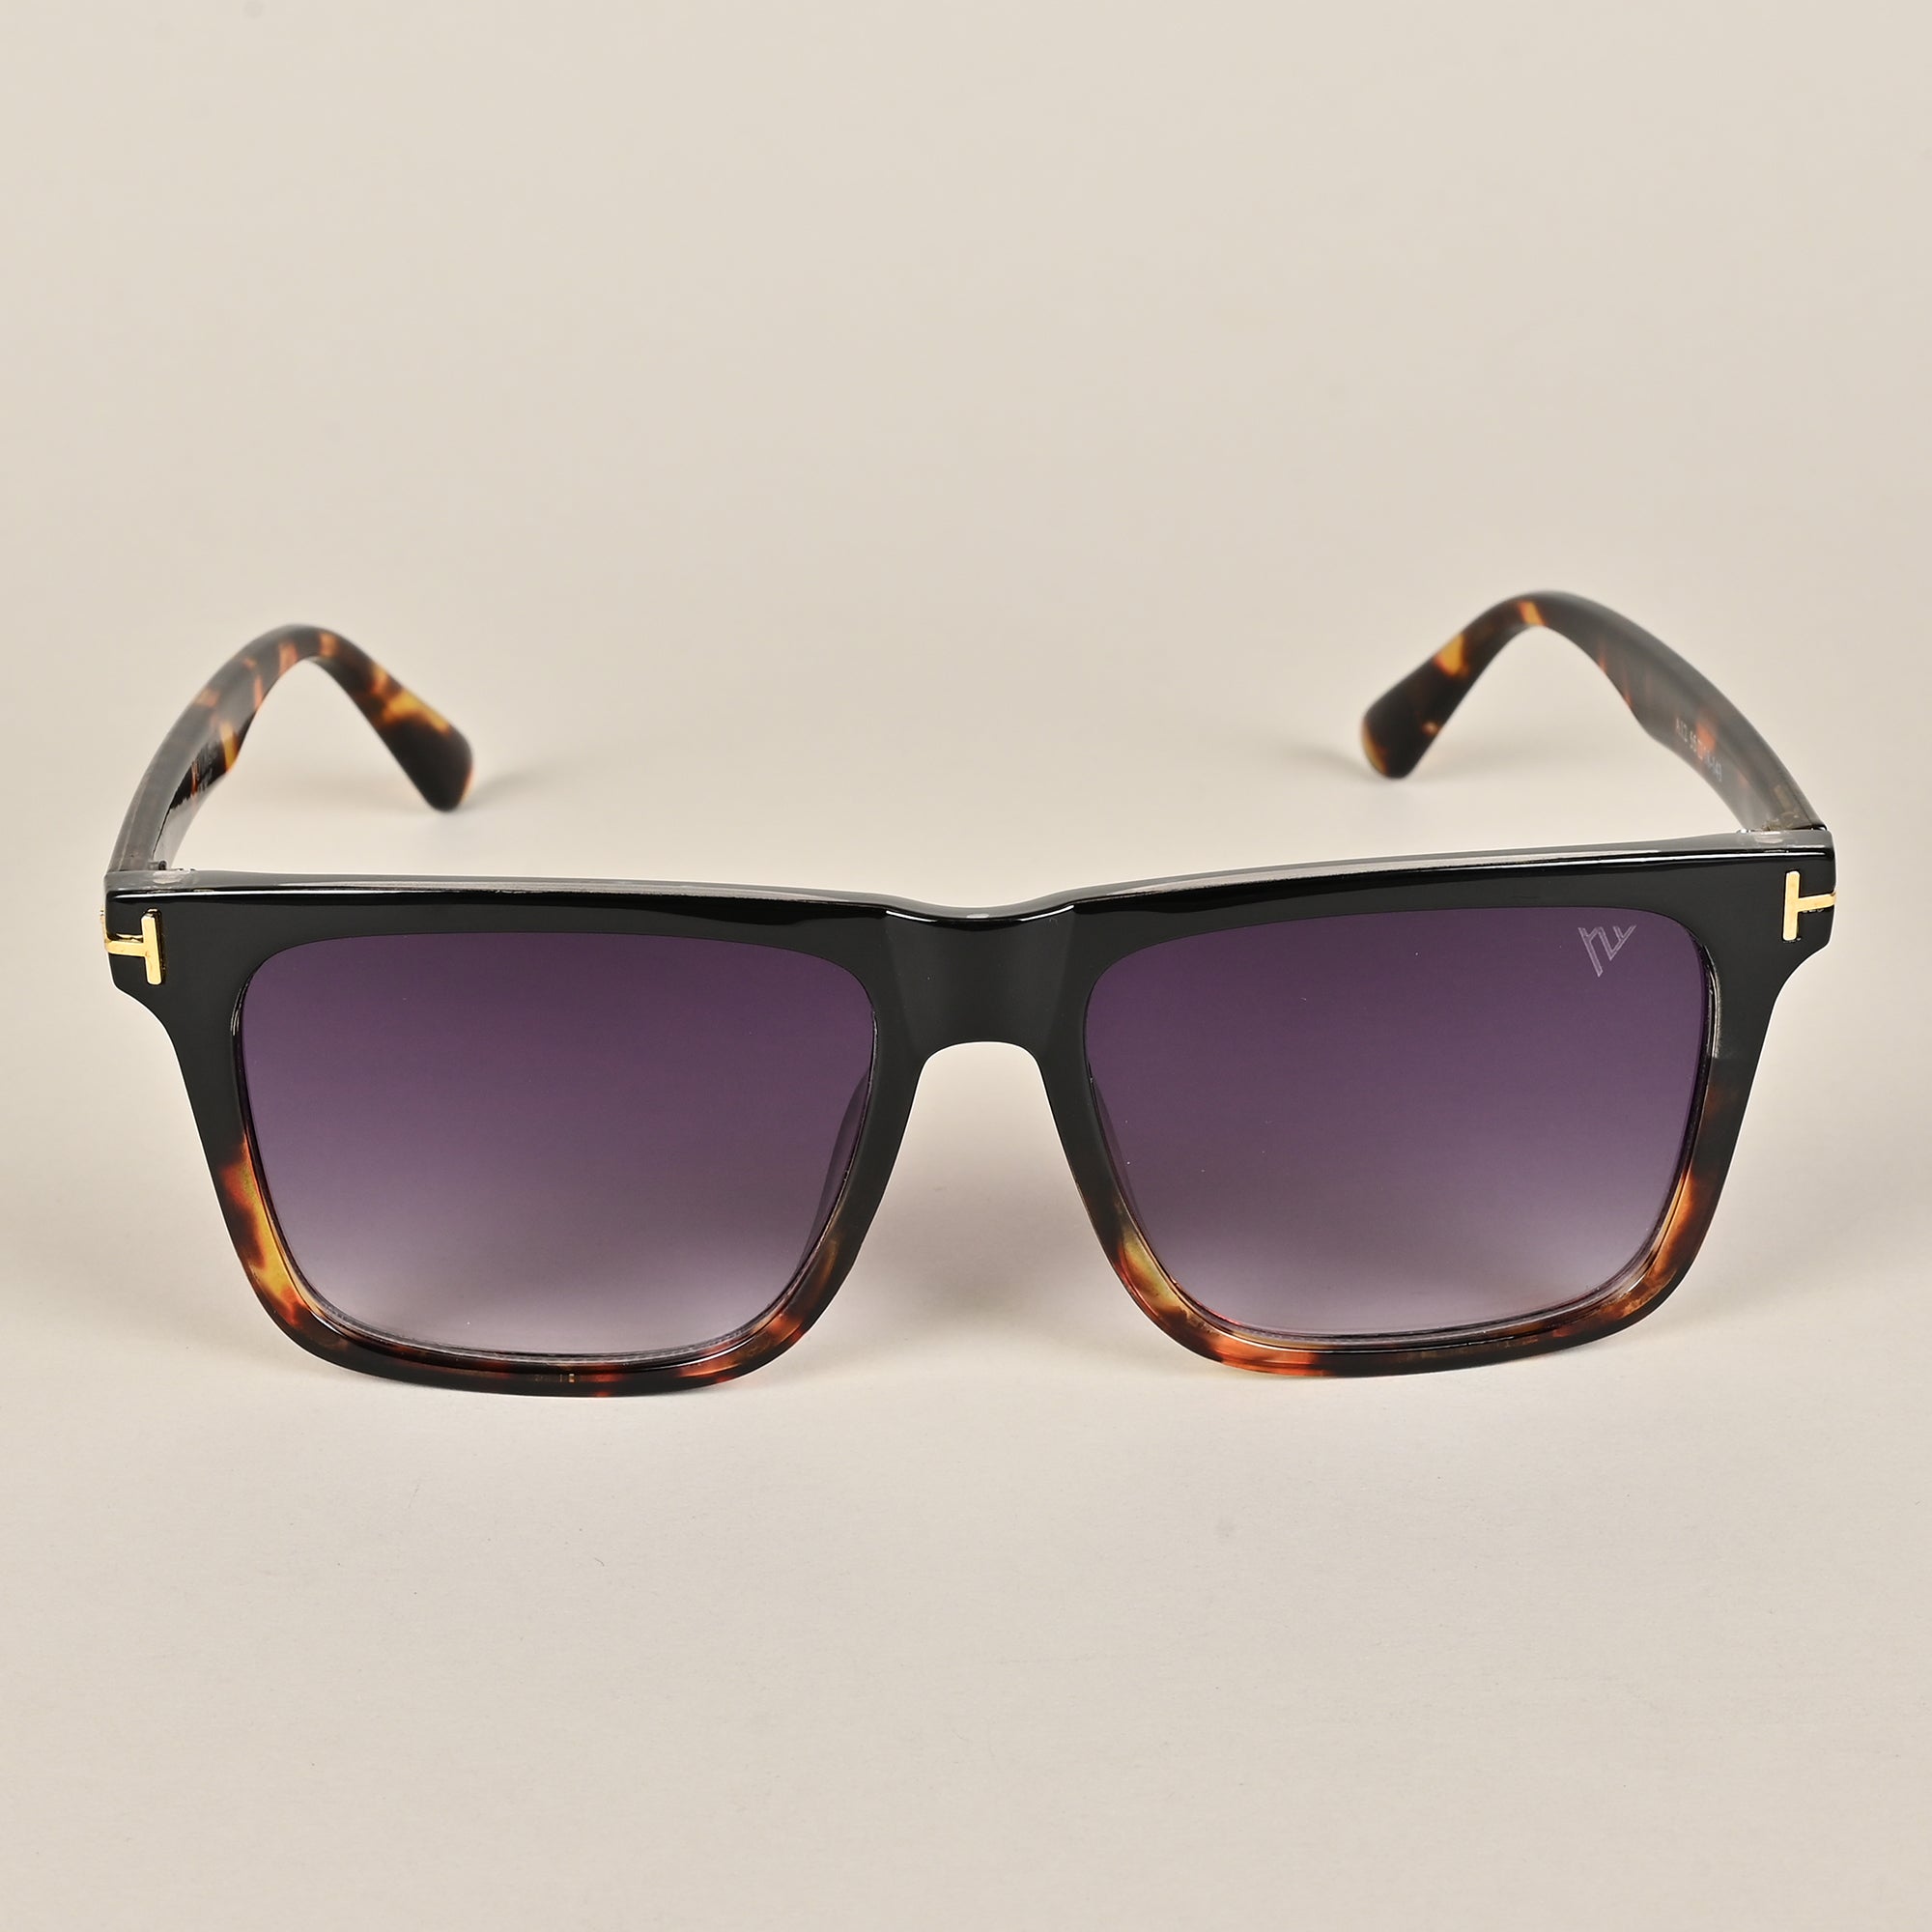 Voyage Black Wayfarer Sunglasses for Men & Women (A12MG3954)